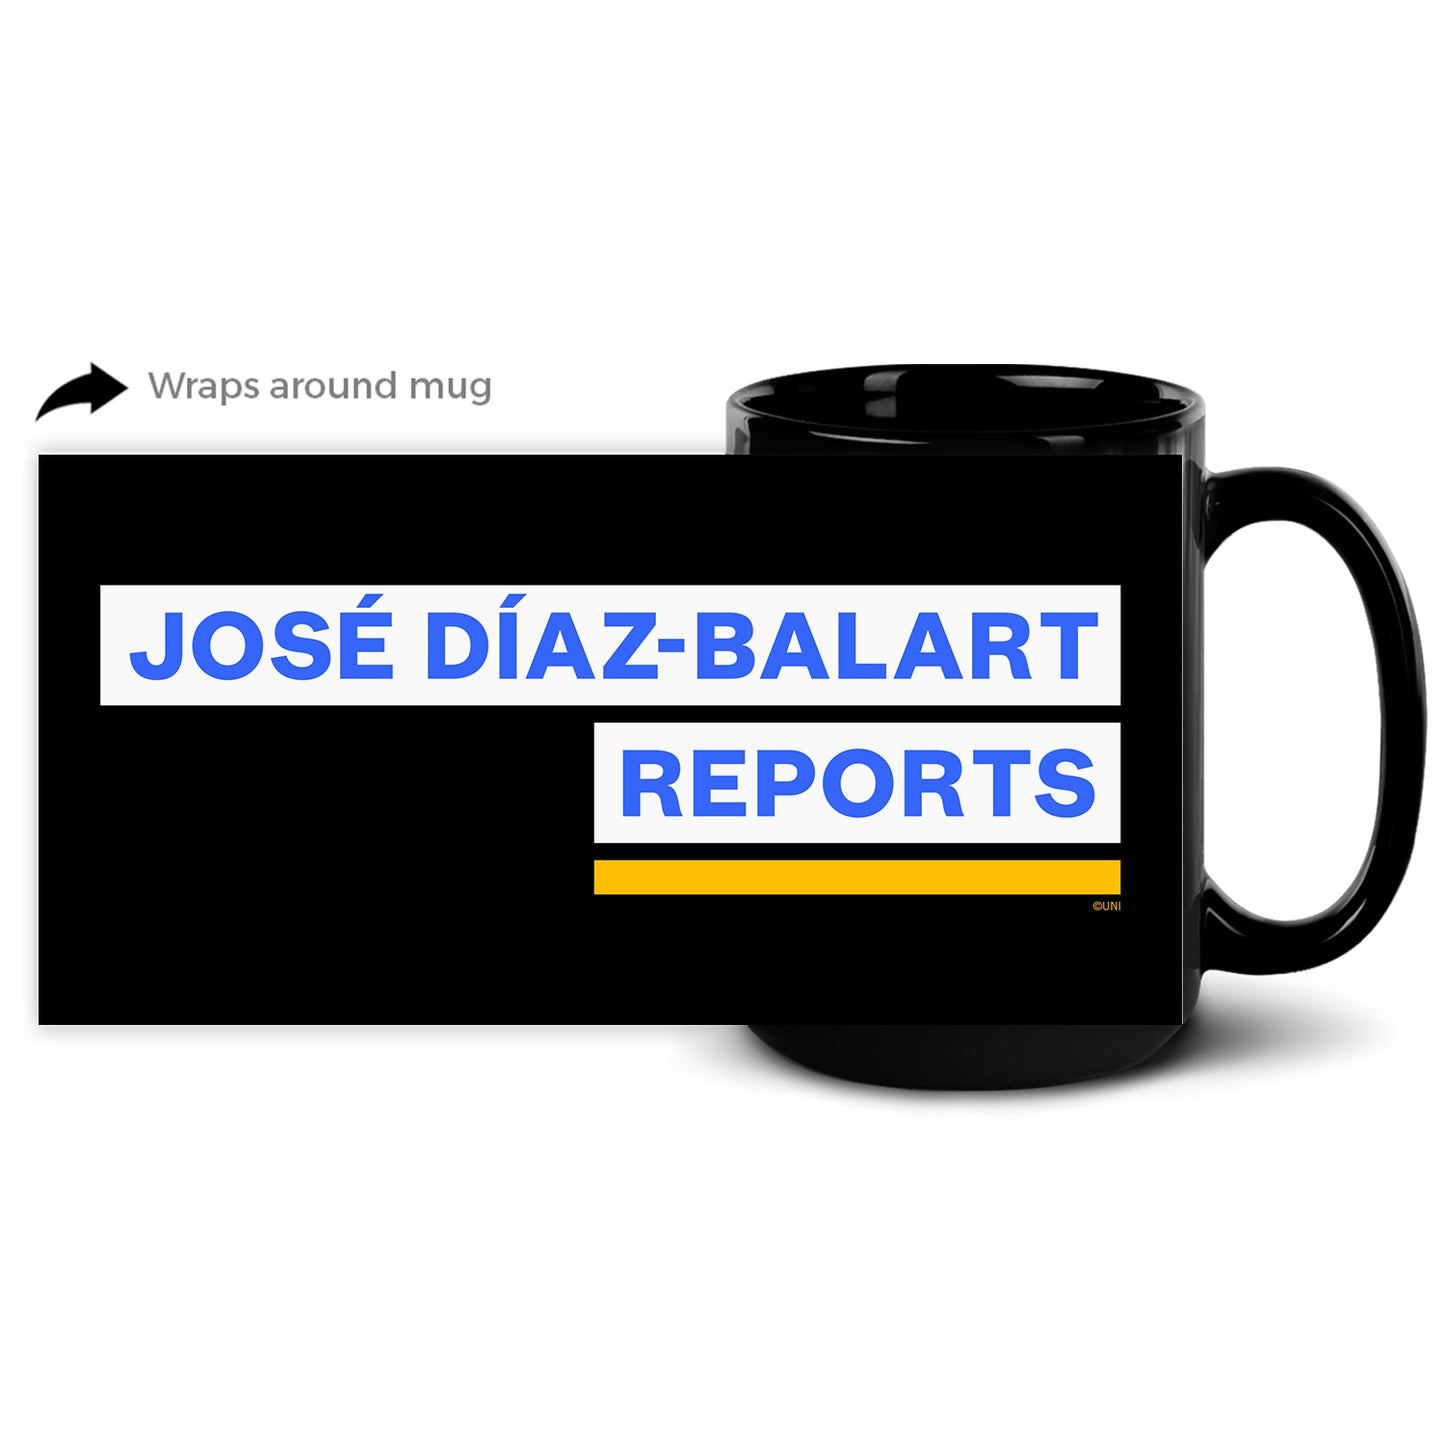 Jose Diaz-Balart Reports Black Mug